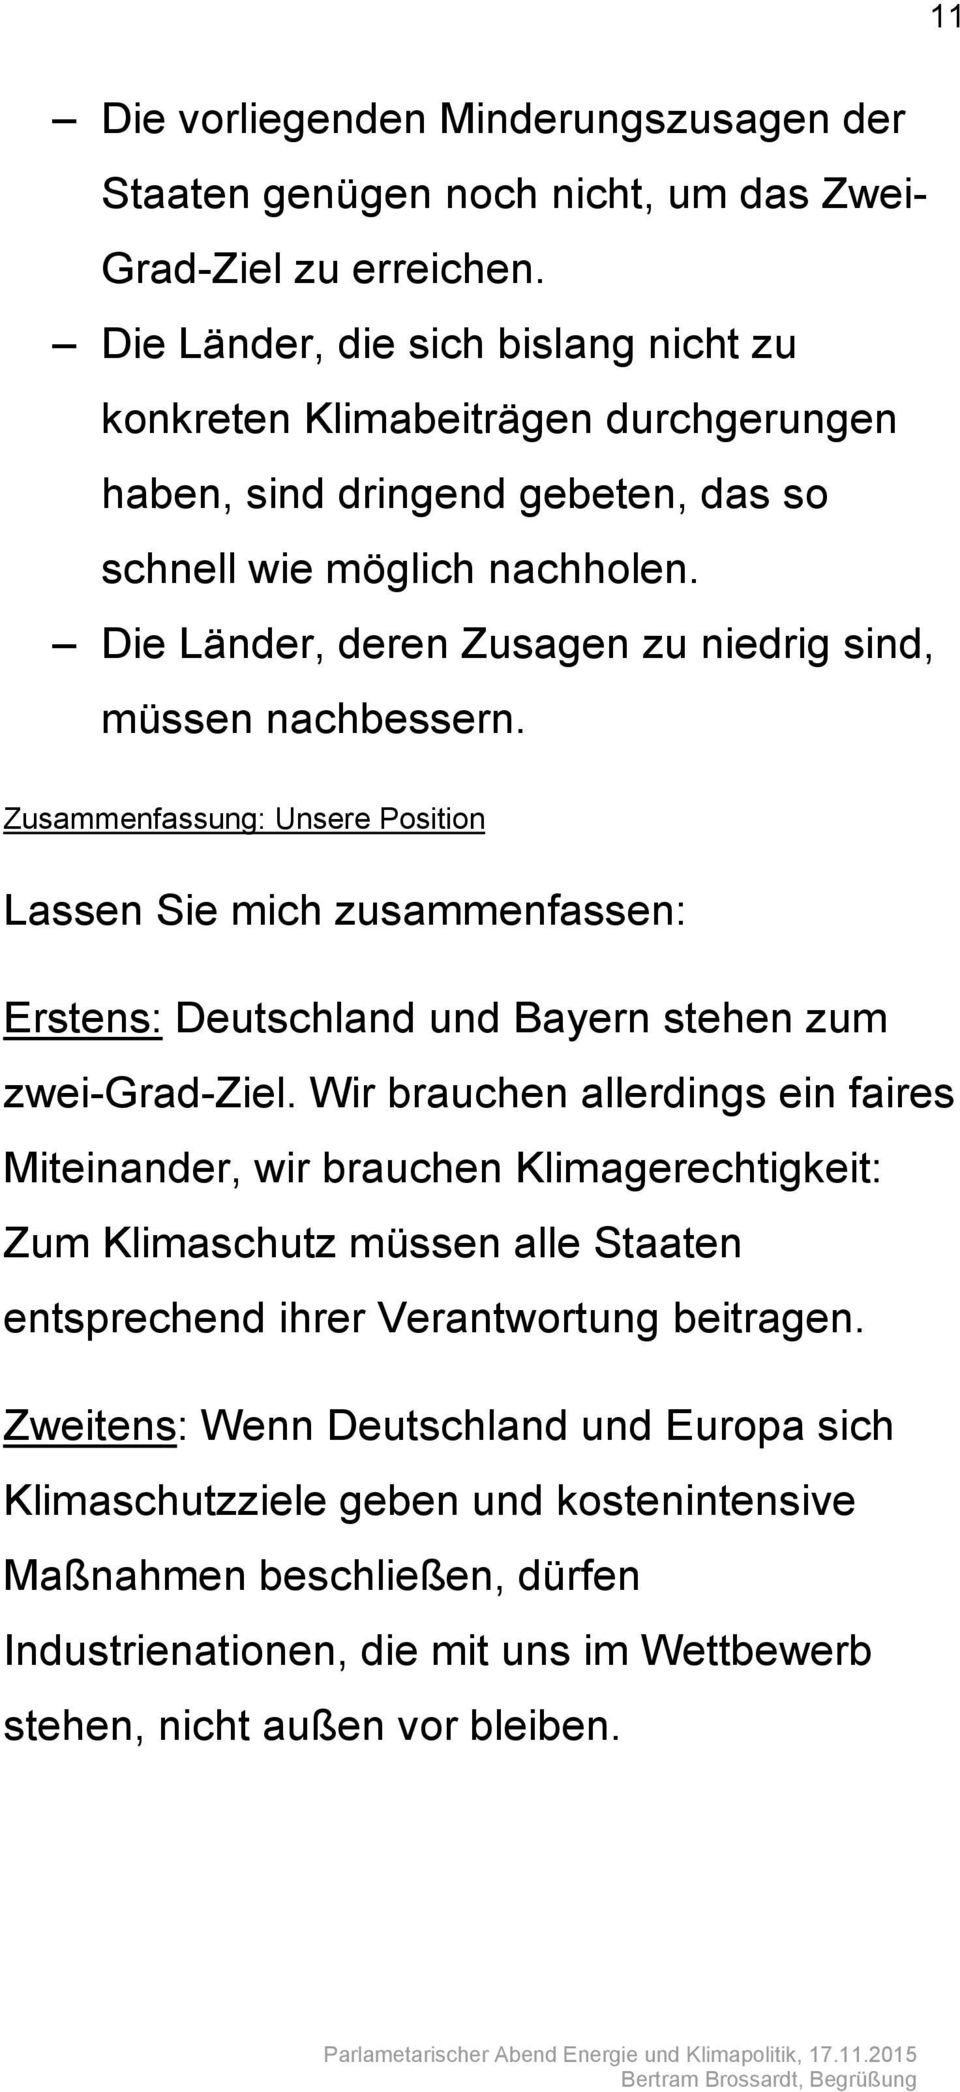 Die Länder, deren Zusagen zu niedrig sind, müssen nachbessern. Zusammenfassung: Unsere Position Lassen Sie mich zusammenfassen: Erstens: Deutschland und Bayern stehen zum zwei-grad-ziel.